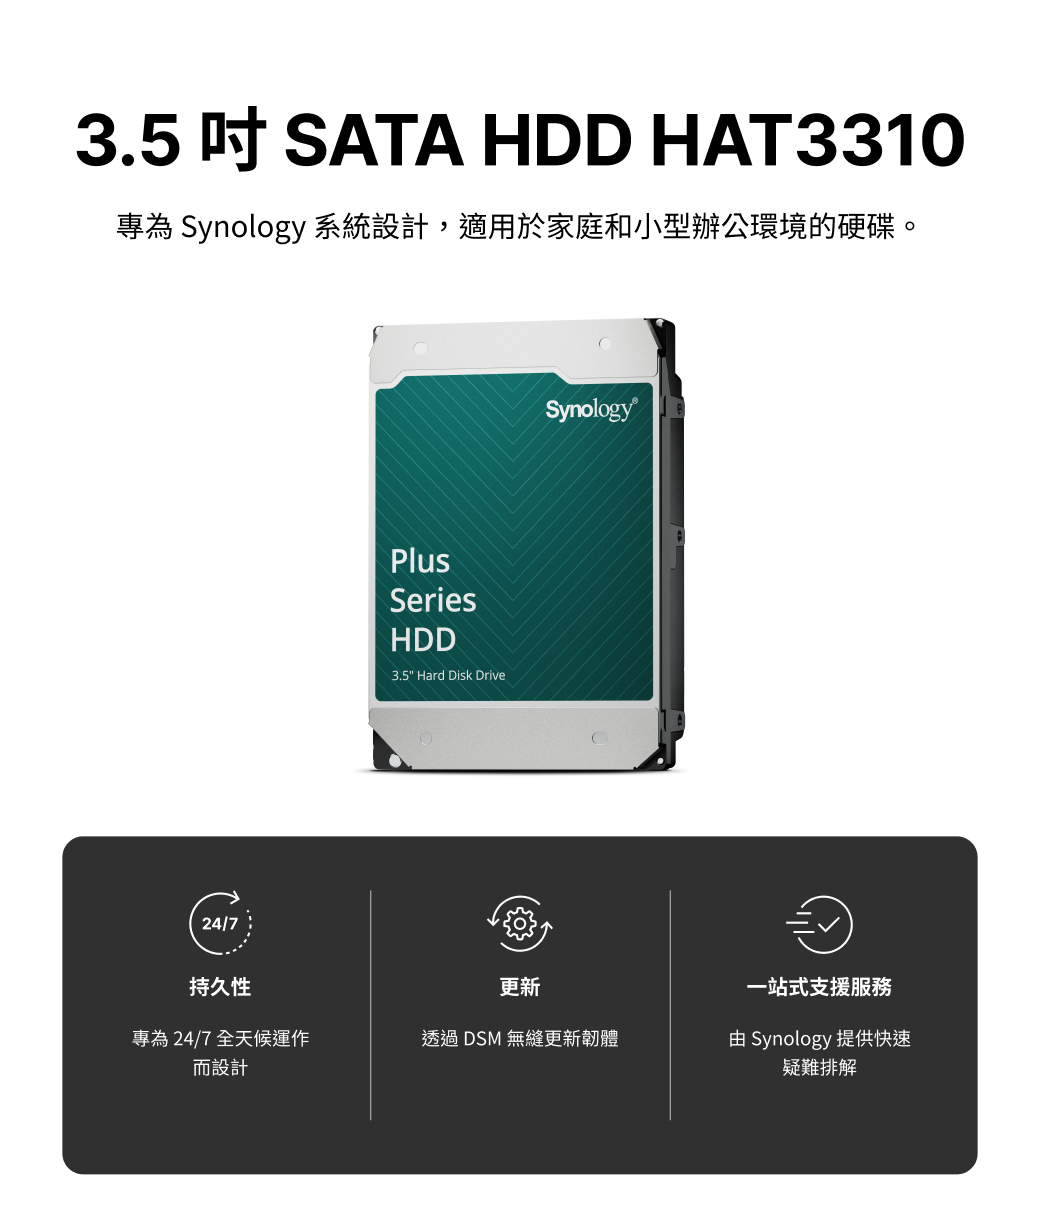 3.5 吋SATA HDD HAT3310專為 Synology 系統設計,適用於家庭和小型辦公環境的硬碟。24/7PlusSeriesHDD3.5" Hard Disk DriveSynology持久性更新一站式支援服務專為24/7 全天候運作而設計透過DSM 無縫更新韌體由 Synology 提供快速疑難排解